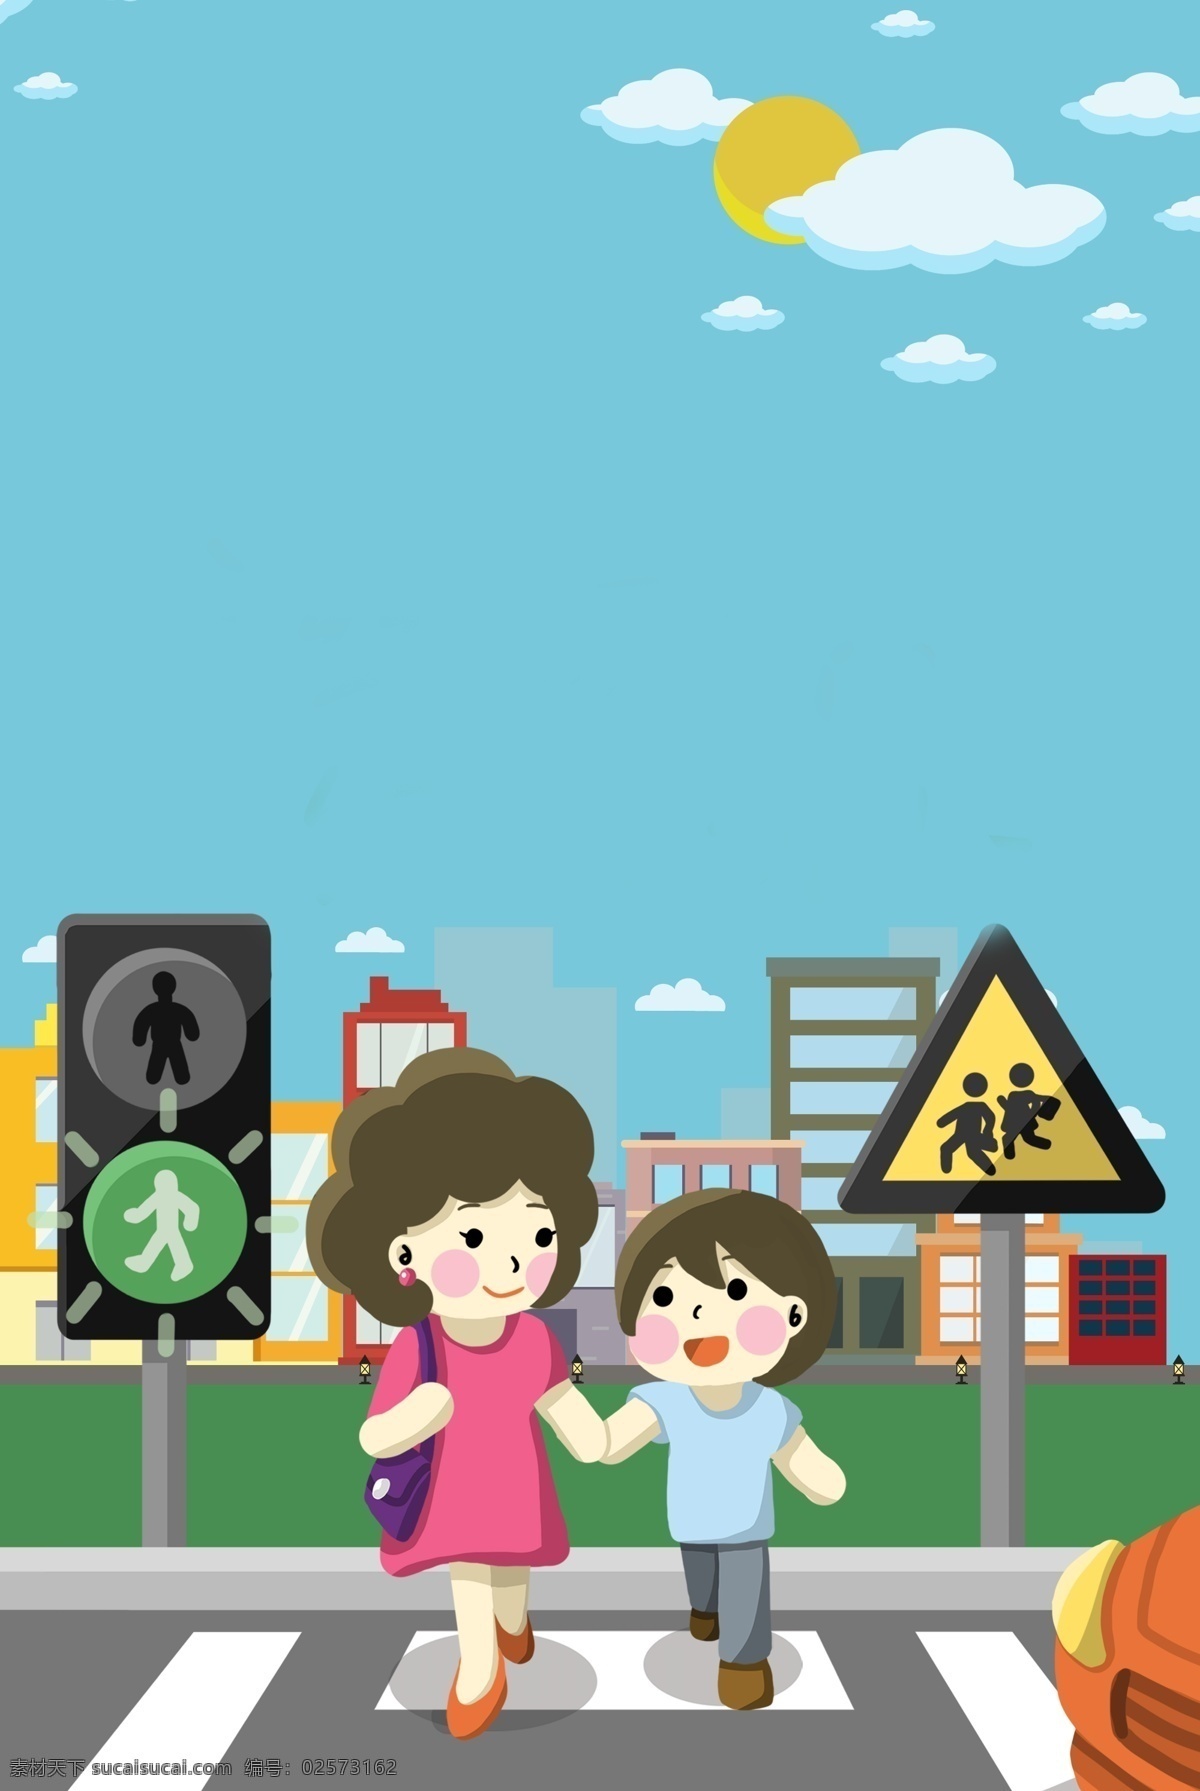 交通安全 教育 卡通 蓝色 海报 背景 安全教育 交通 斑马线 遵守交通规则 交通规则 安全第一